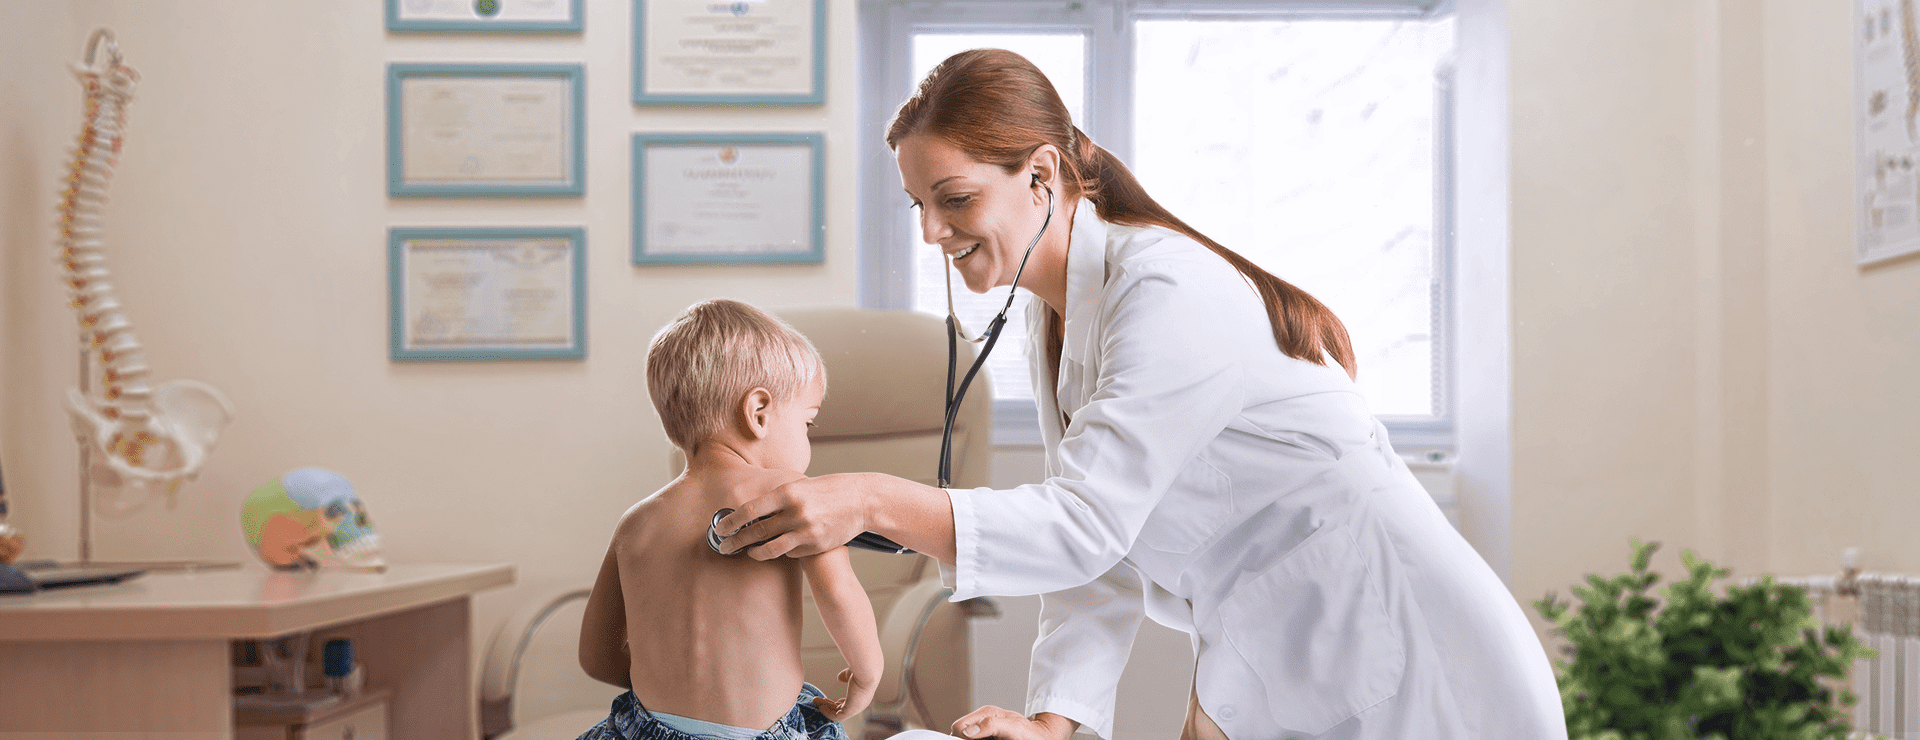 Укрепляем иммунитет ребенка: советы педиатра